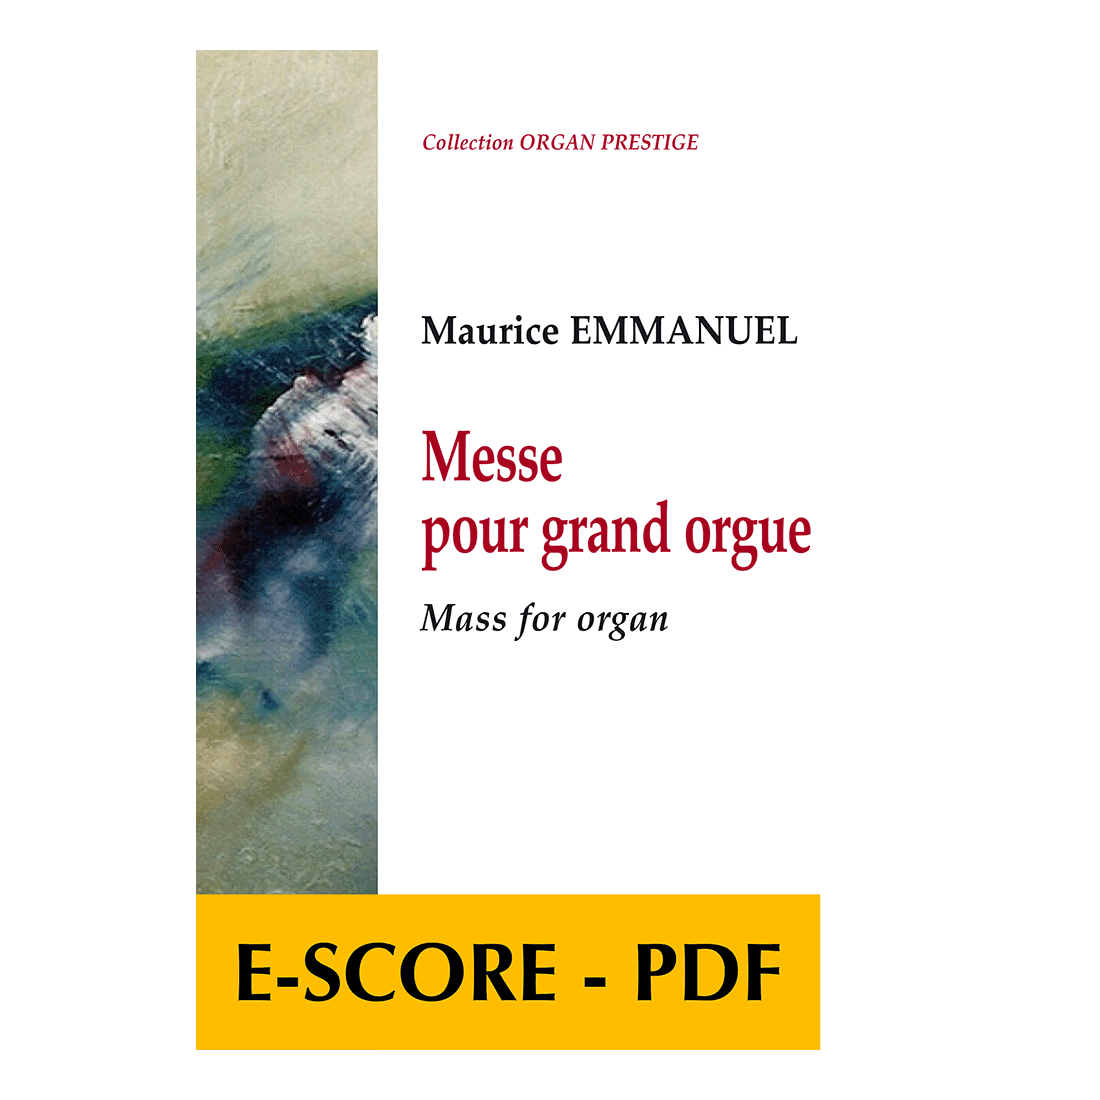 Messe for great organ - E-score PDF